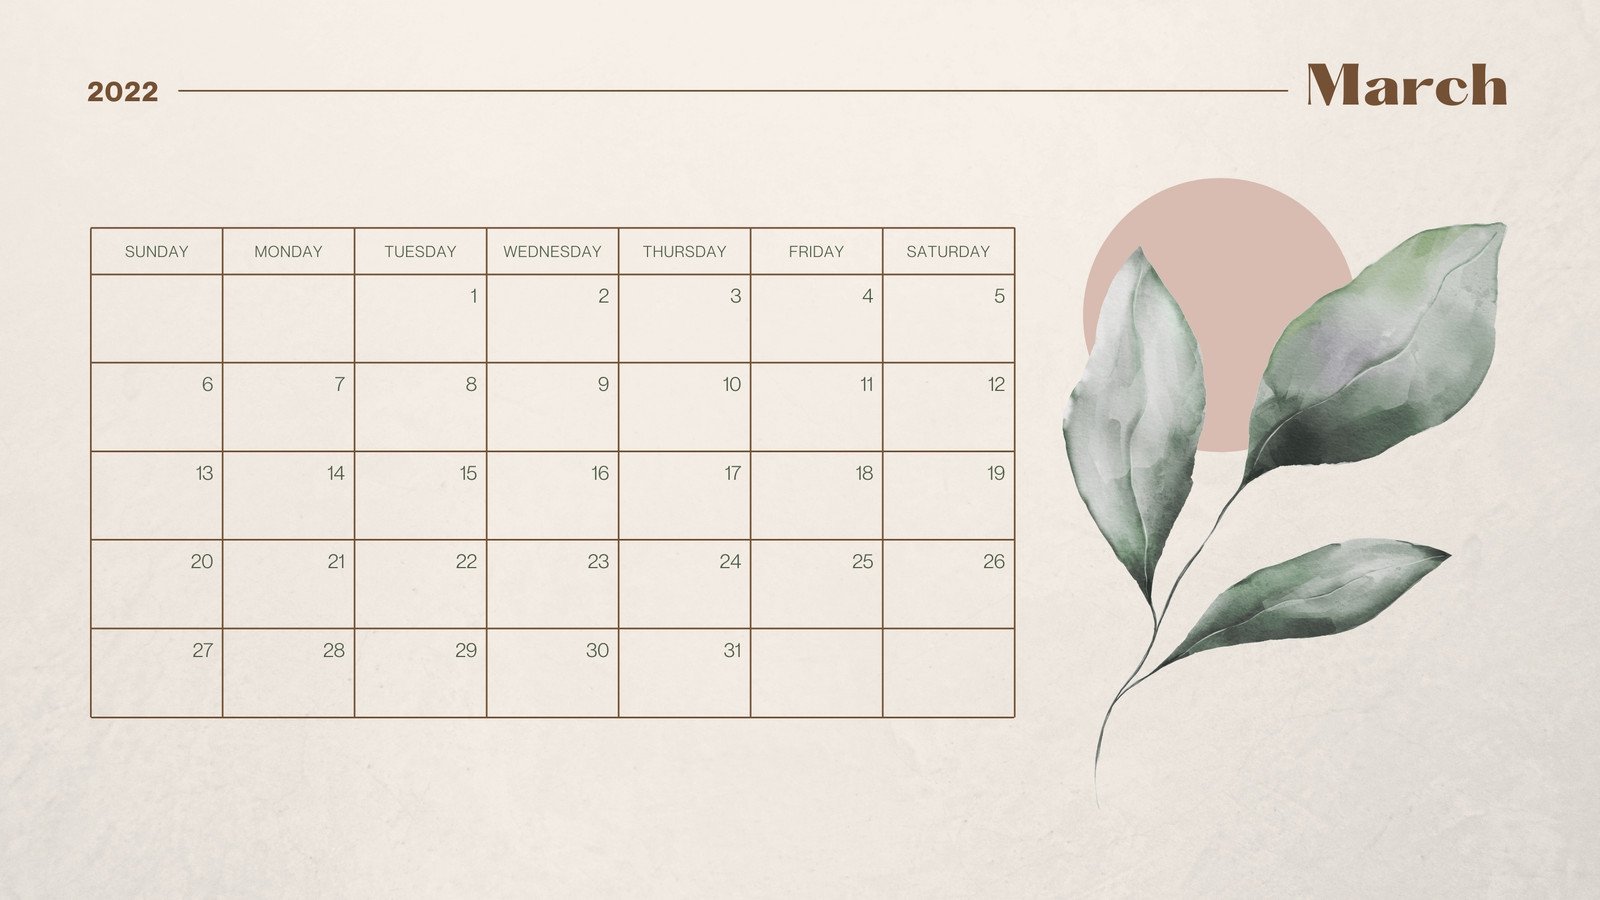 Tìm kiếm một mẫu lịch tháng phù hợp với nhu cầu của bạn? Đừng bỏ lỡ mẫu lịch tháng tháng 3 năm 2022 đa dạng, in miễn phí của chúng tôi. Thanh lịch, đẹp mắt và có thể tính chỉnh theo ý thích của bạn để đảm bảo phù hợp hoàn toàn với nhu cầu của bạn.